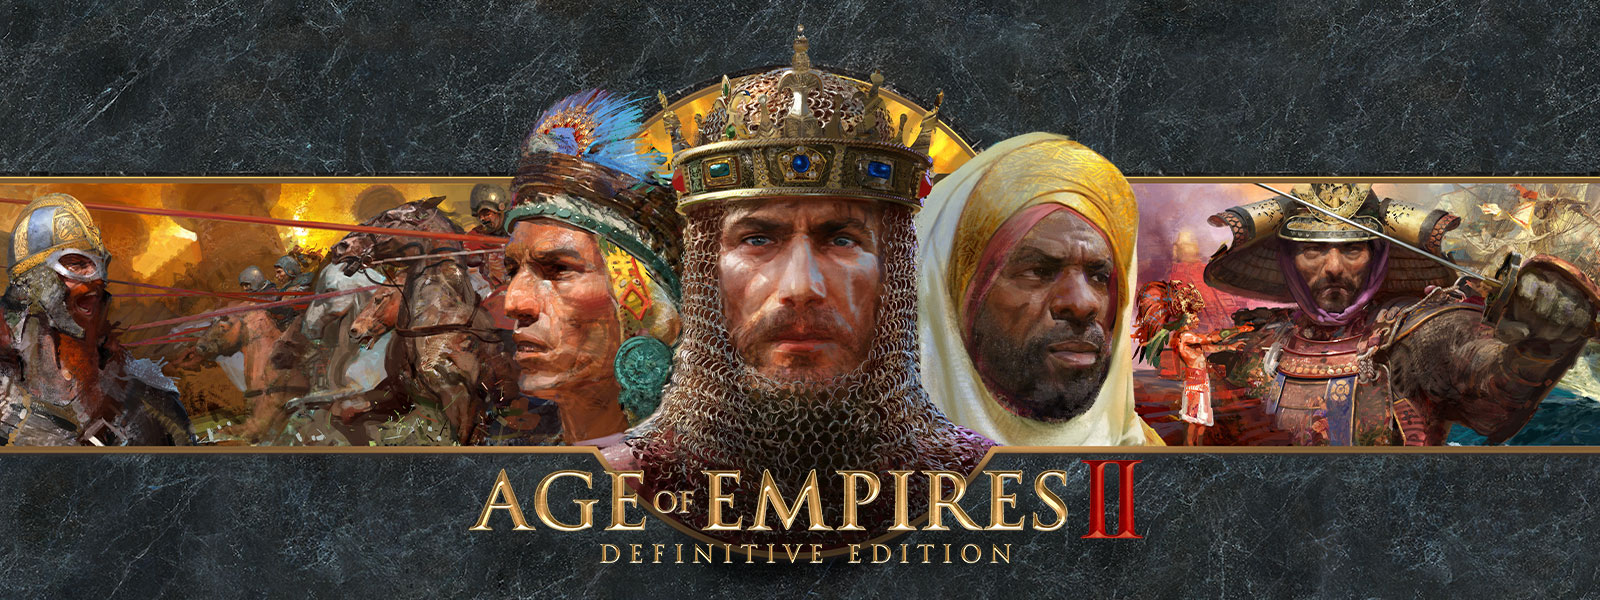 전쟁 지도자들과 그 군대가 등장하는 회색 점판암을 배경으로 그려진 Age of Empires II: Definitive Edition 로고